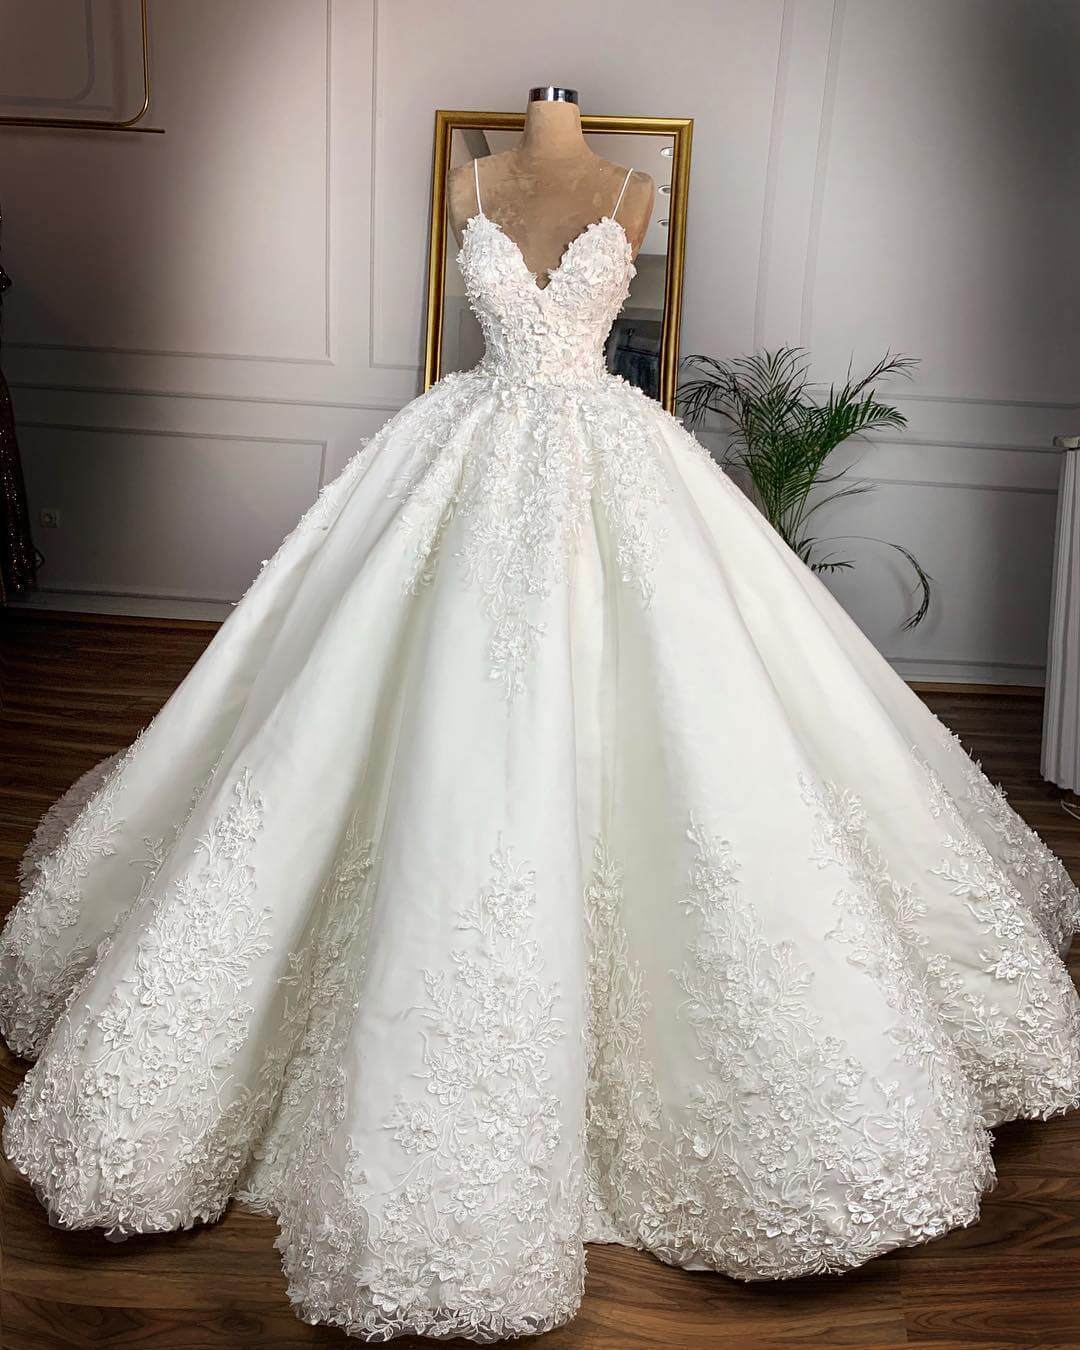 تفسير لبس فستان الزفاف للعزباء والمخطوبة والمتزوجة وتفسير الفستان الأبيض والفستان الطويل